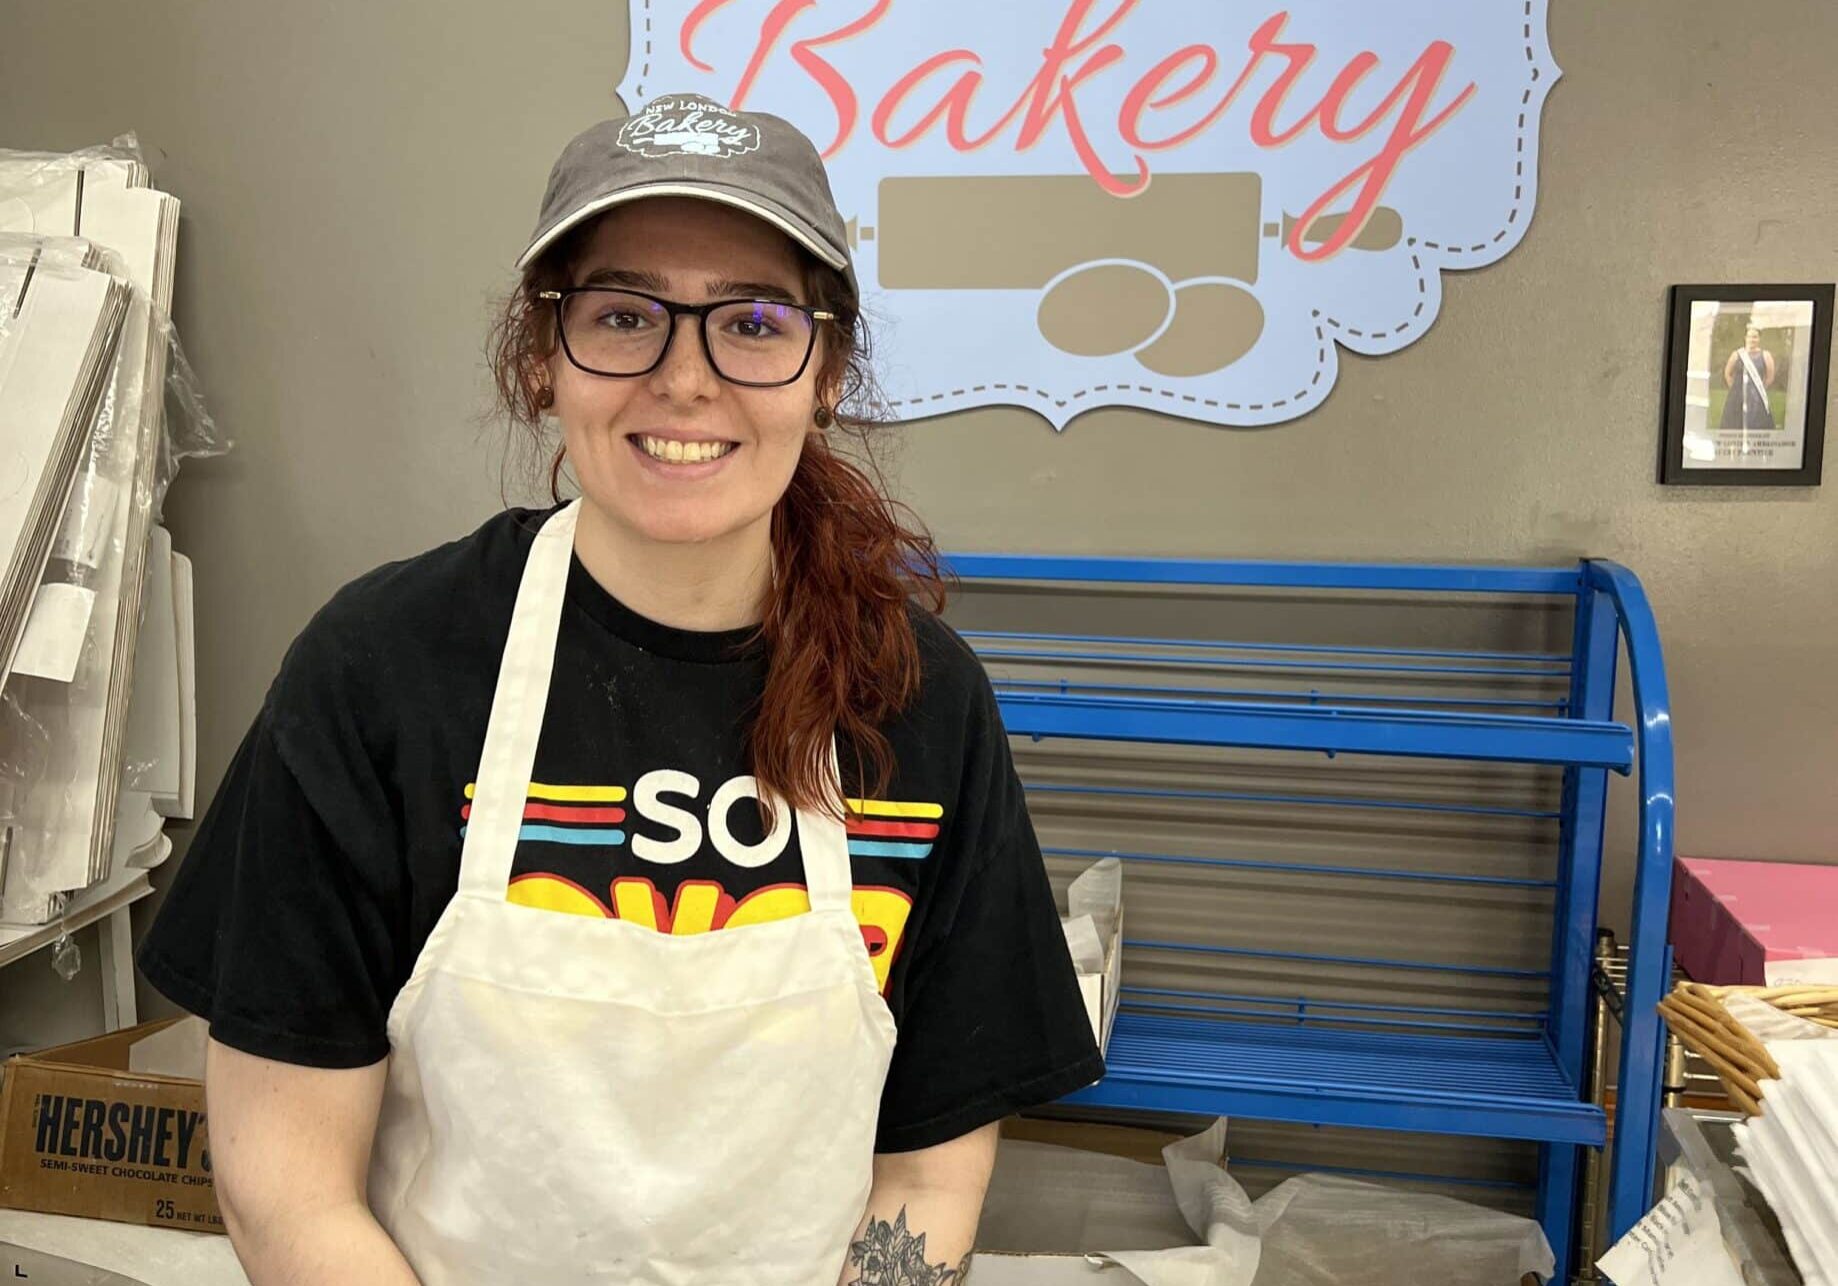 bakery own